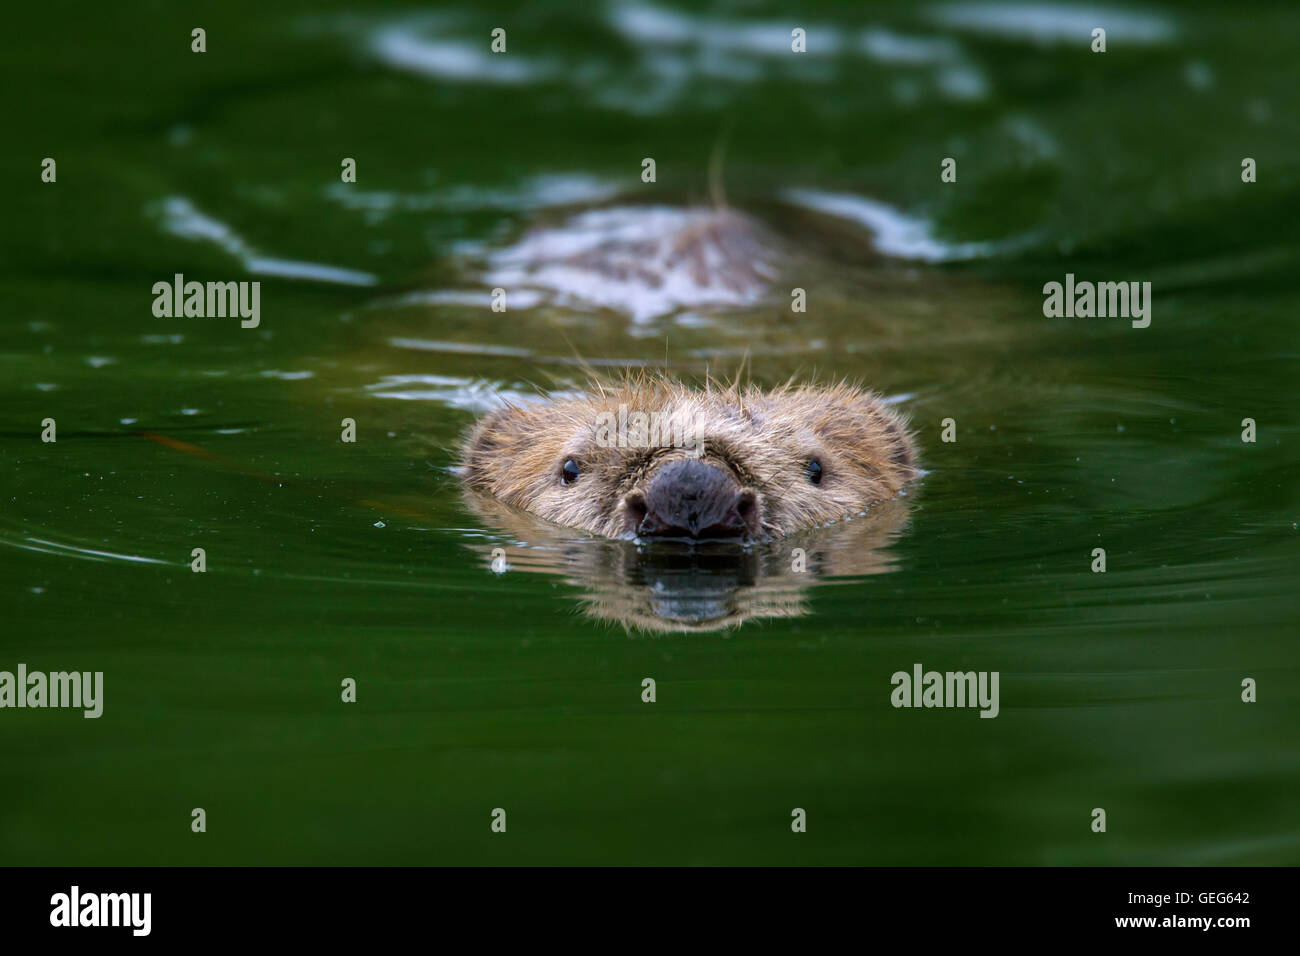 Close up of head of Eurasian beaver / European beaver (Castor fiber) swimming in pond Stock Photo